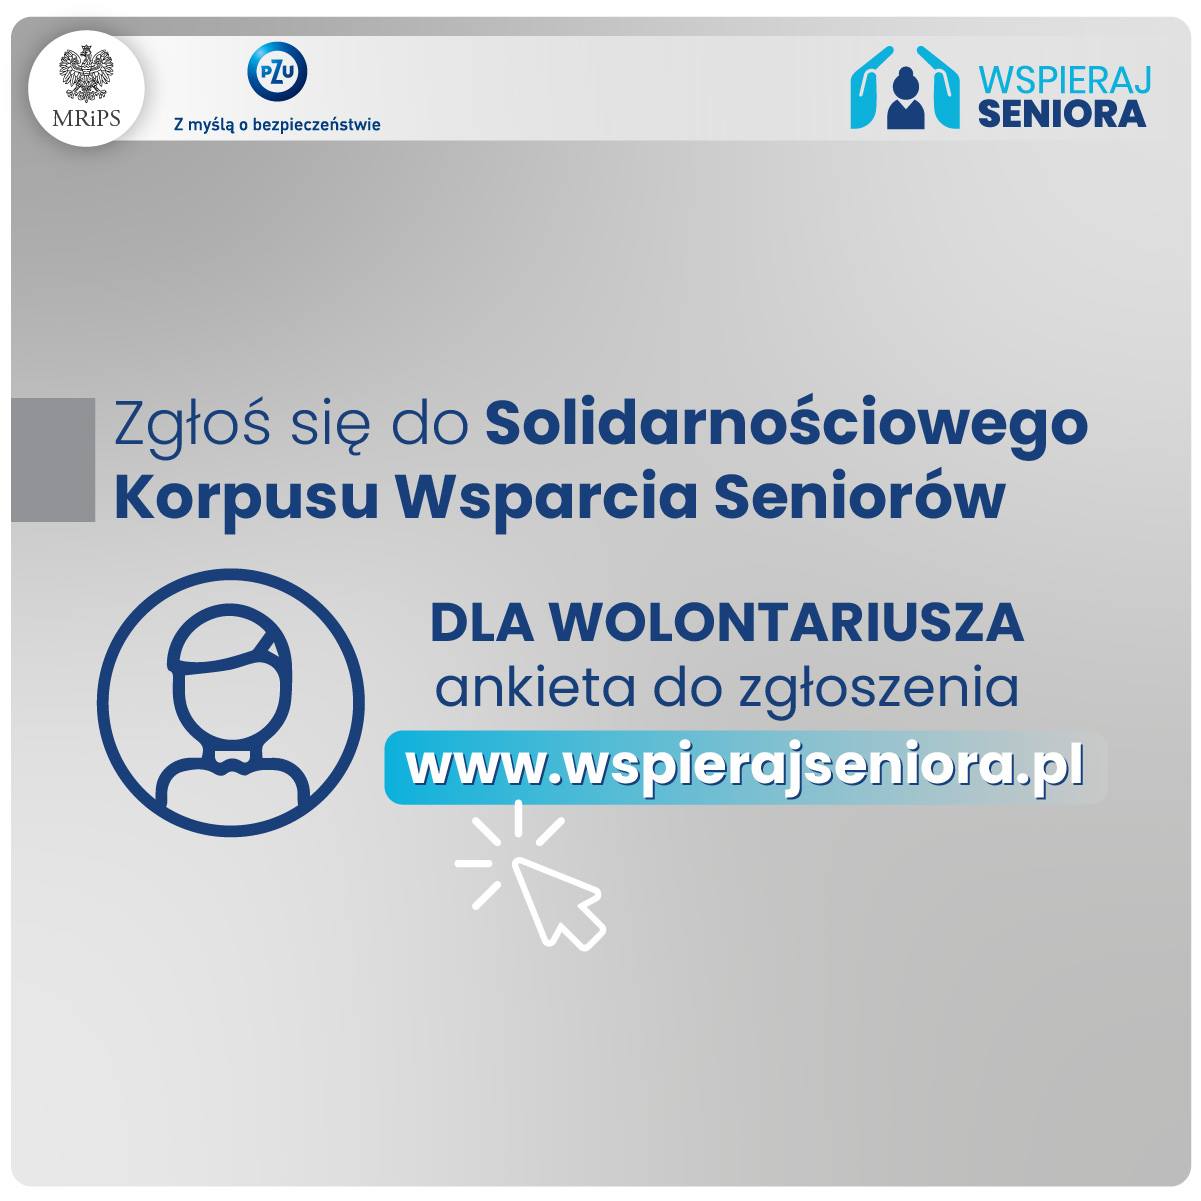 Tekst na grafice: Zgłoś się do Solidarnościowego Korpusu Wsparcia Seniorów. Dla wolontariuszy ankieta do zgłoszenia: www.wspierajseniora.pl